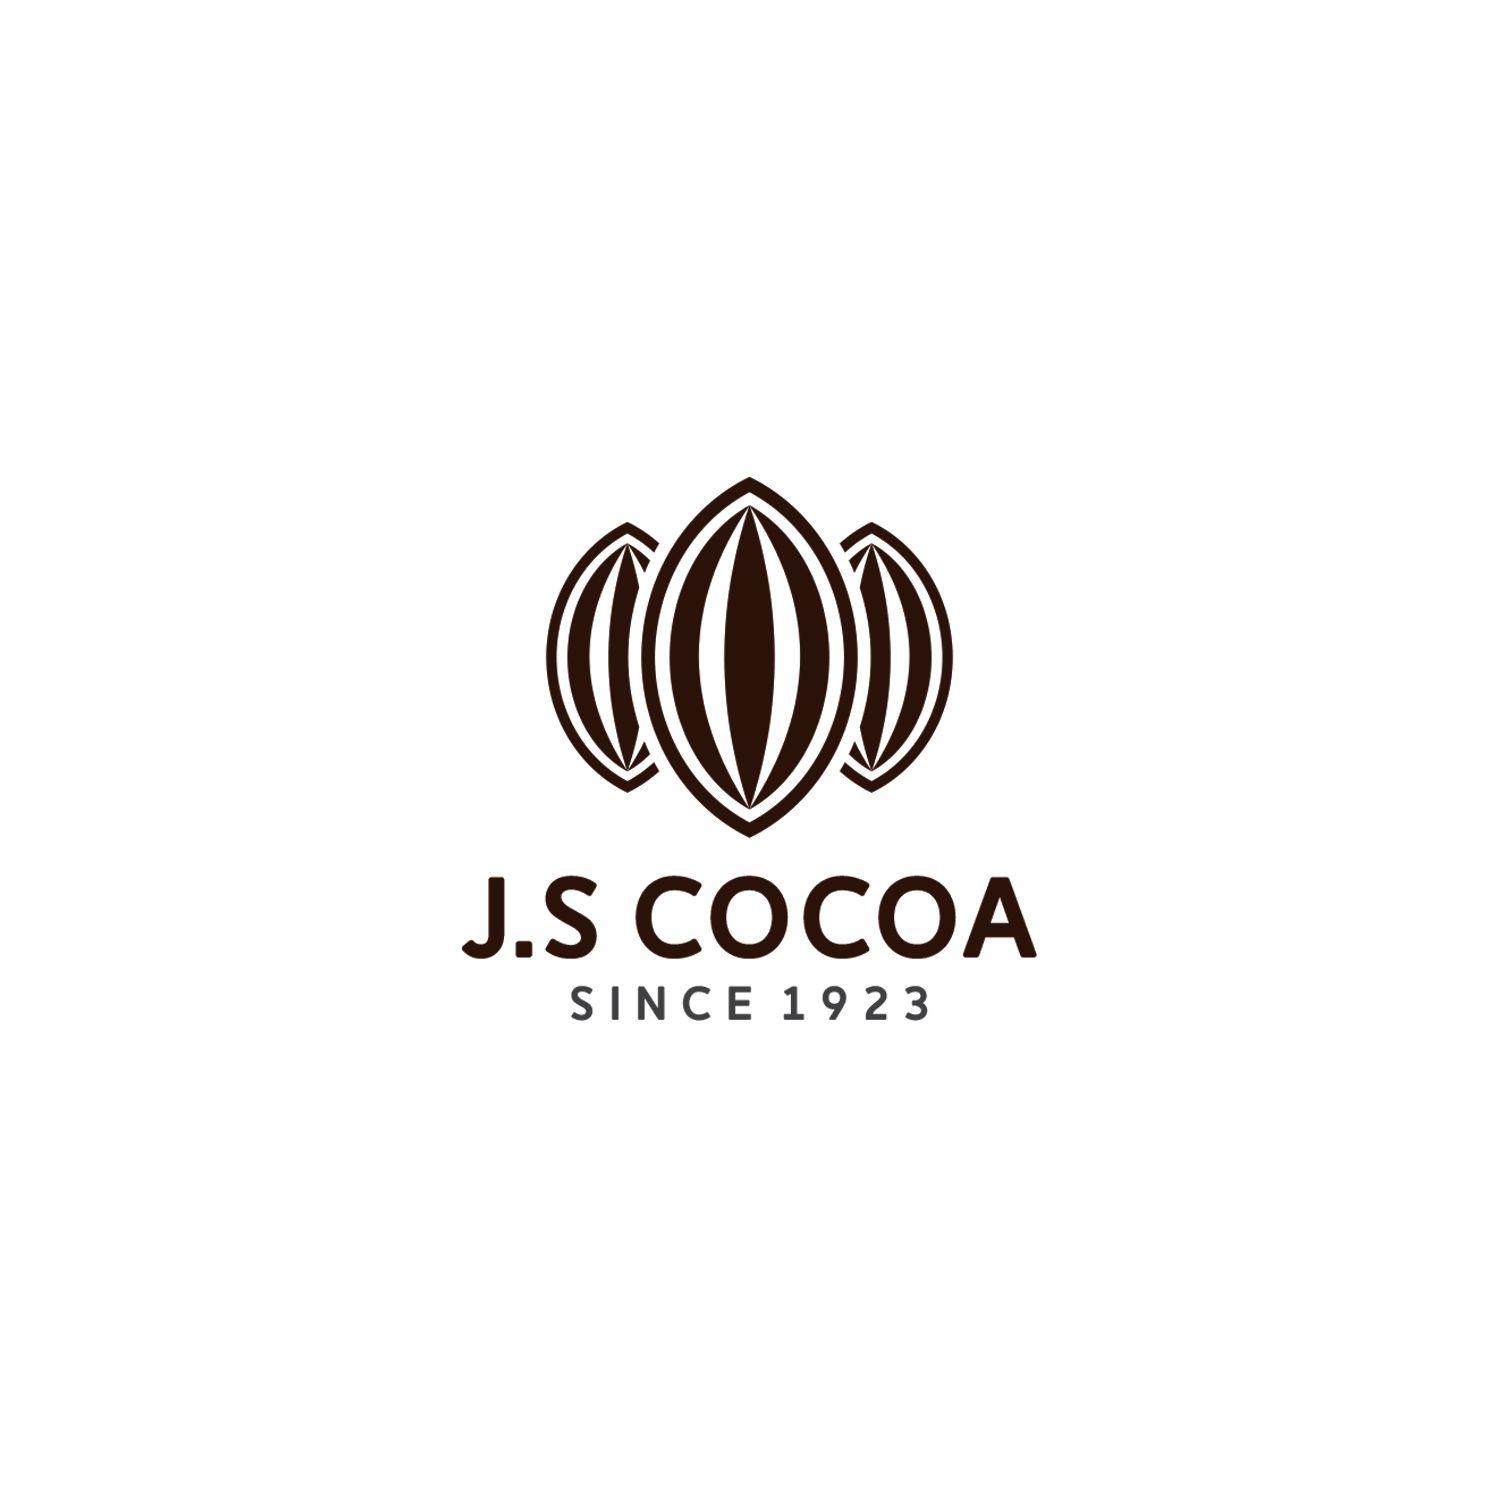 Cocoa Logo - Professional, Masculine, It Company Logo Design for J S Cocoa since